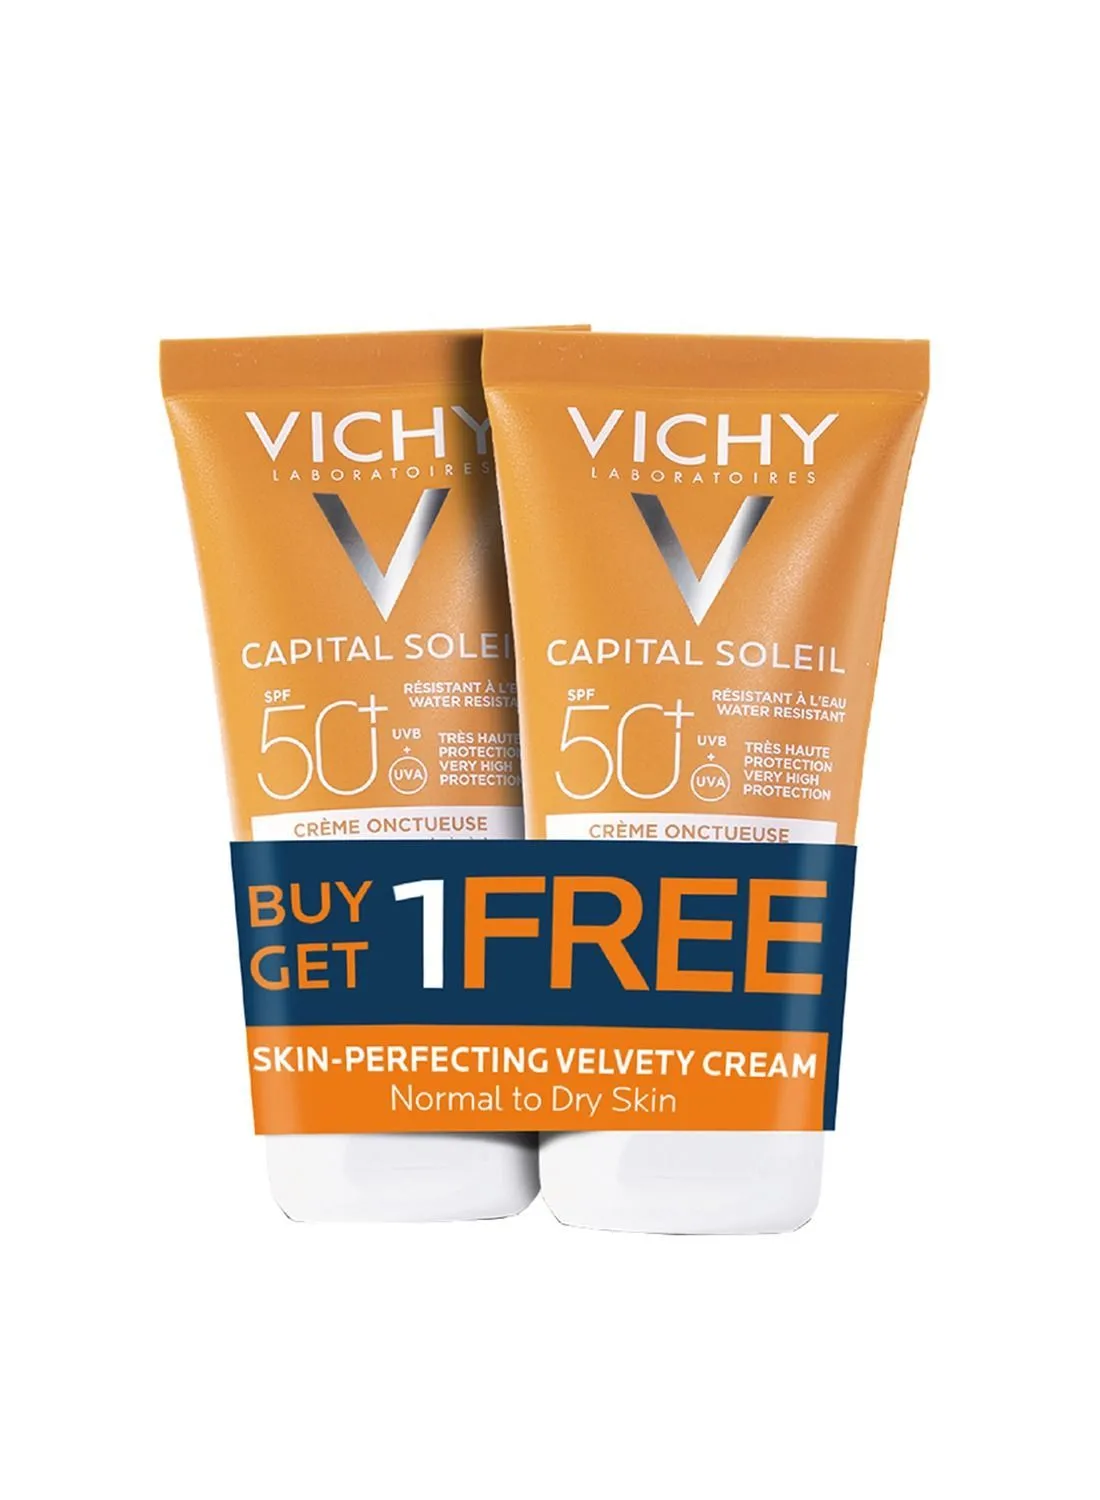 Vichy Capital Soleil Velvety SPF50 اشترِ 1 واحصل على 1 مجانًا من واقي الشمس للبشرة العادية إلى المختلطة